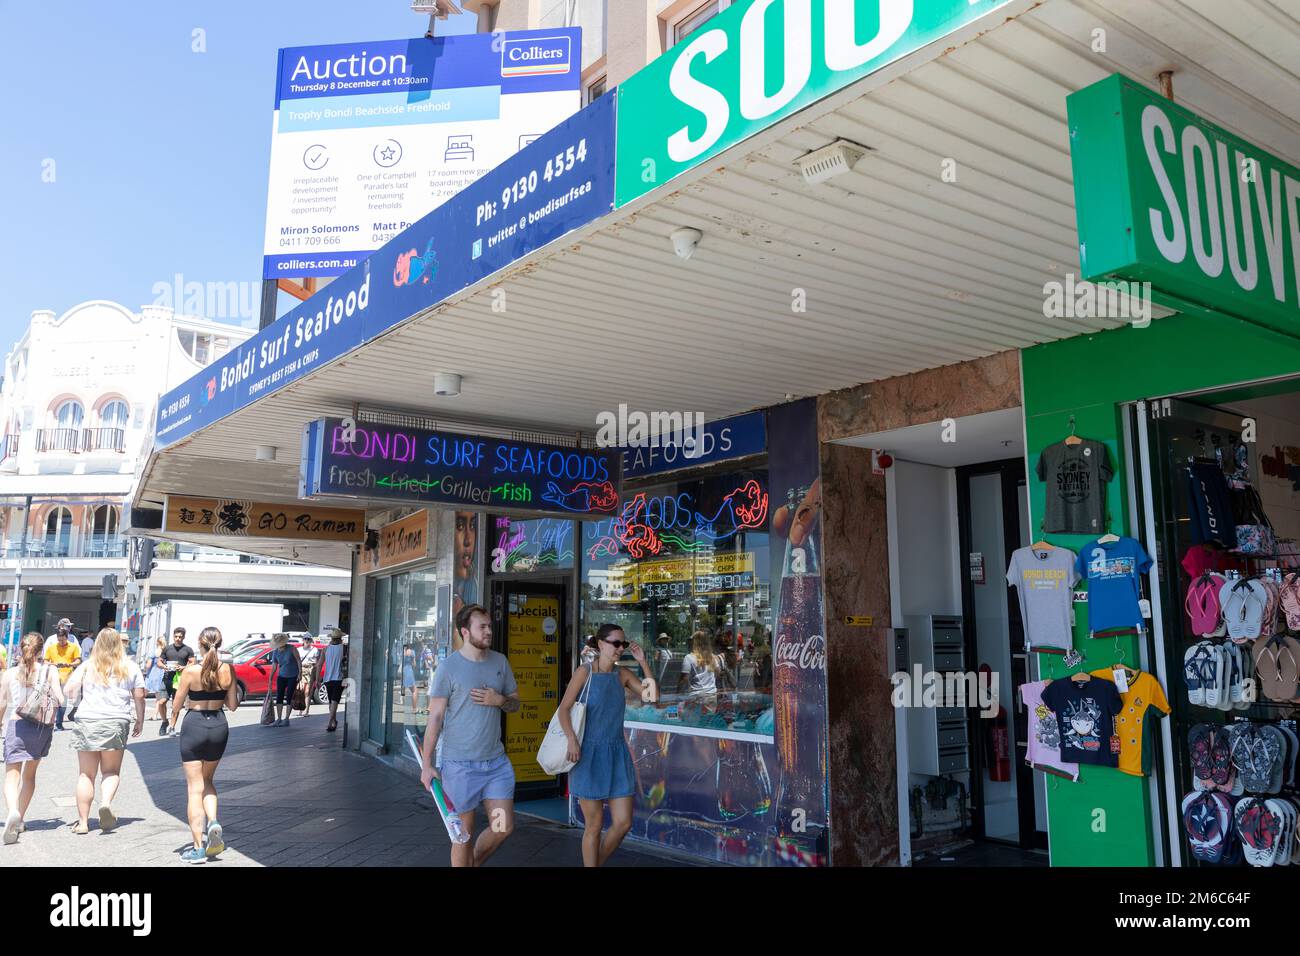 Boutique de fruits de mer Bondi Surf vendant du poisson et des frites et des fruits de mer frais, Campbell Parade, Bondi Beach, Sydney, Australie Banque D'Images